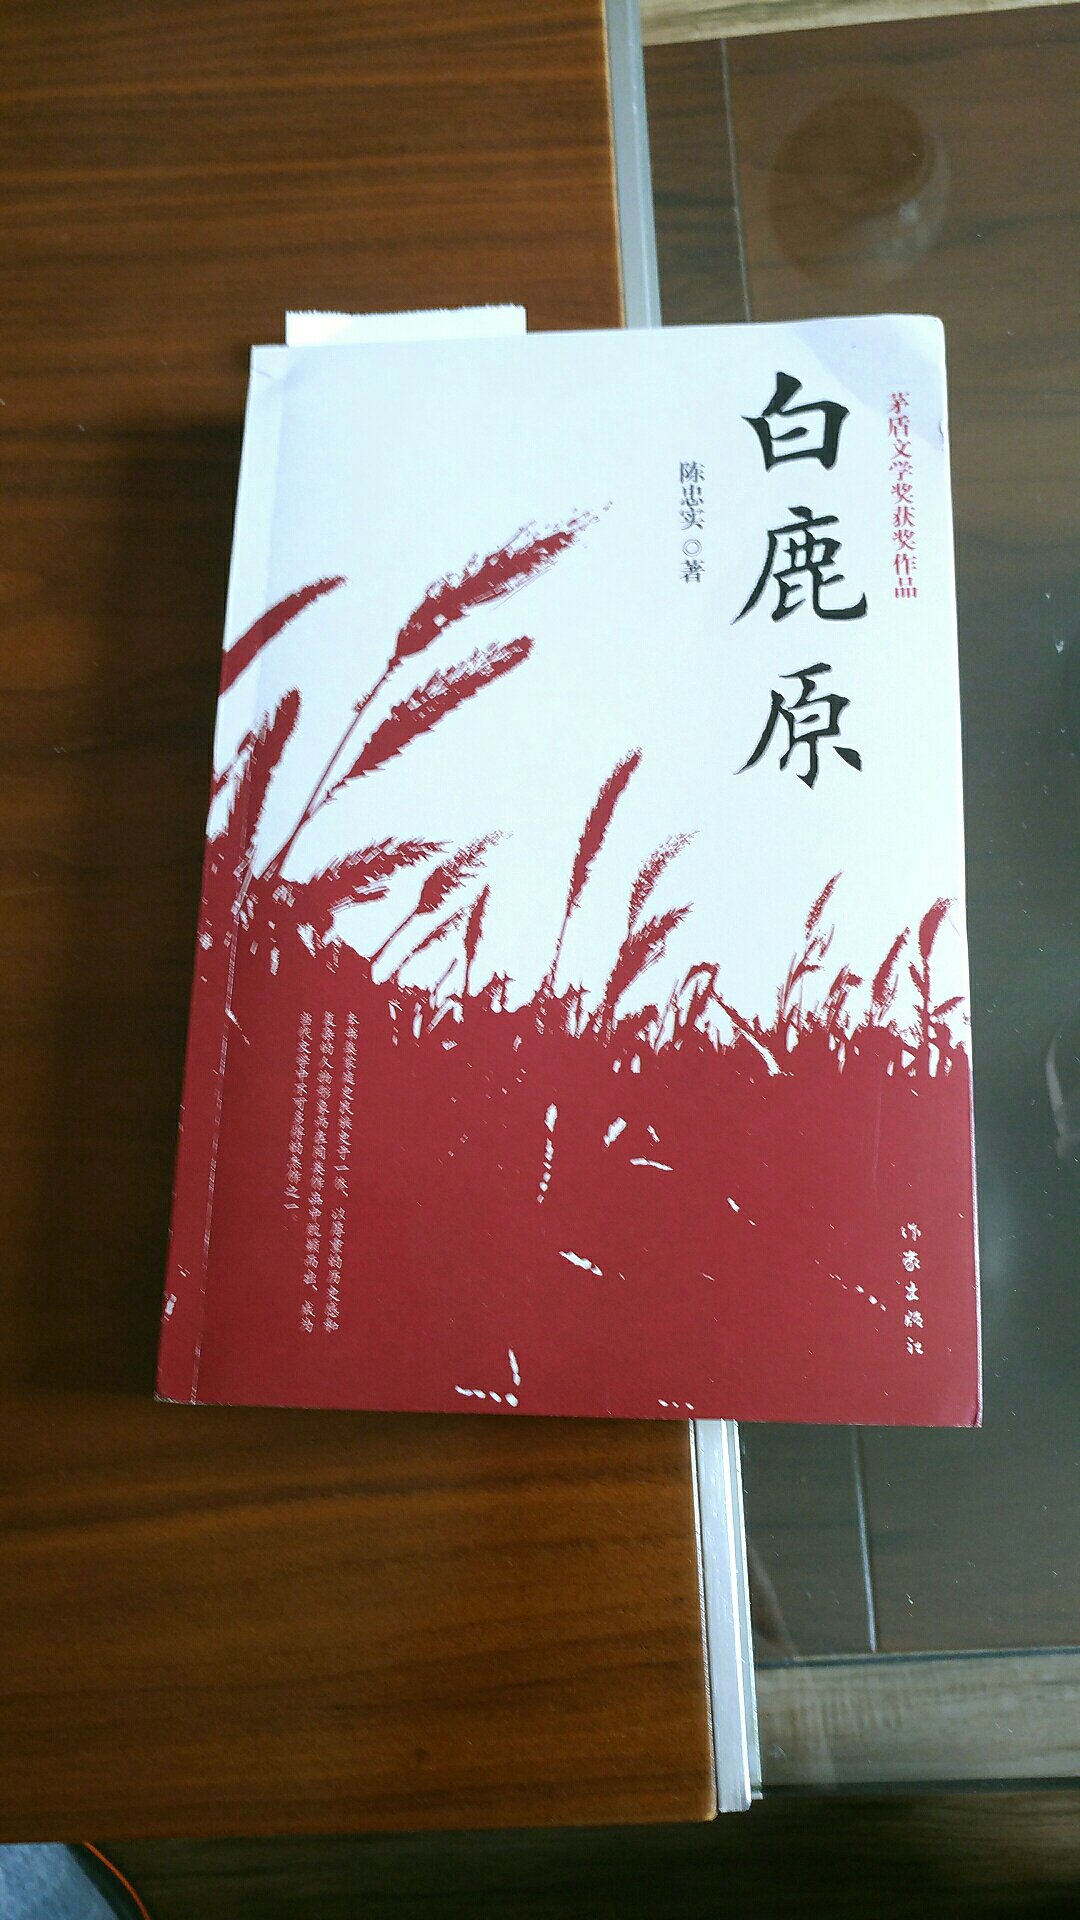 正在广东卫视追剧白鹿原，其实早在93年就在单位图书馆借看了此书，此次买回一本，细细品味。